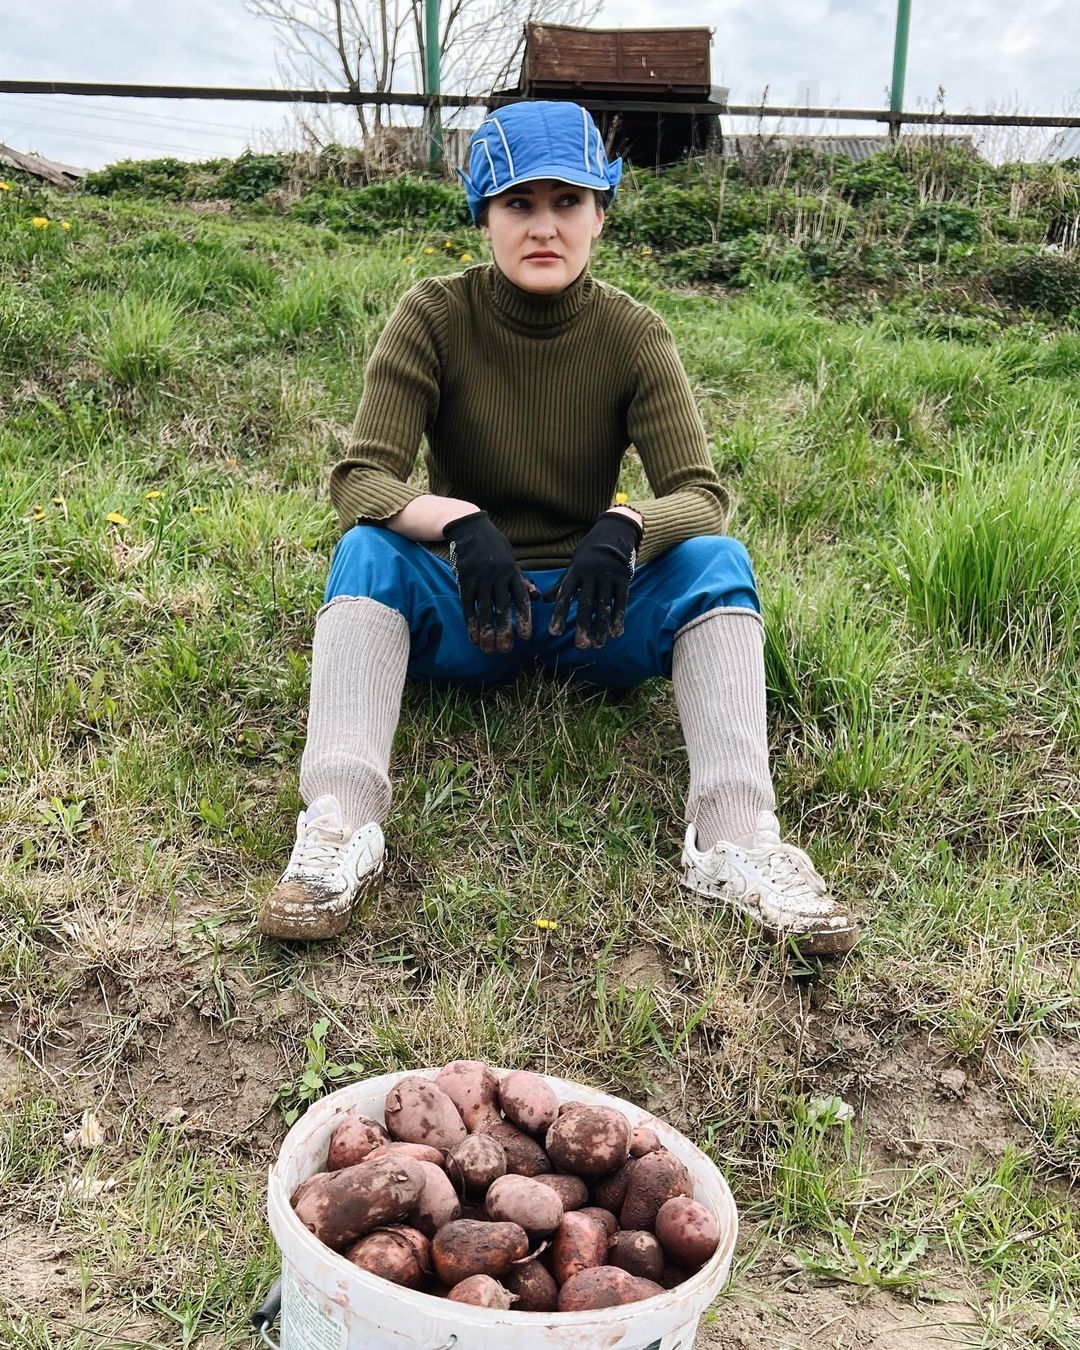 Актриса говорит, что в этом году посадила картошку. Фото: Instagram.com/tanet_vip/